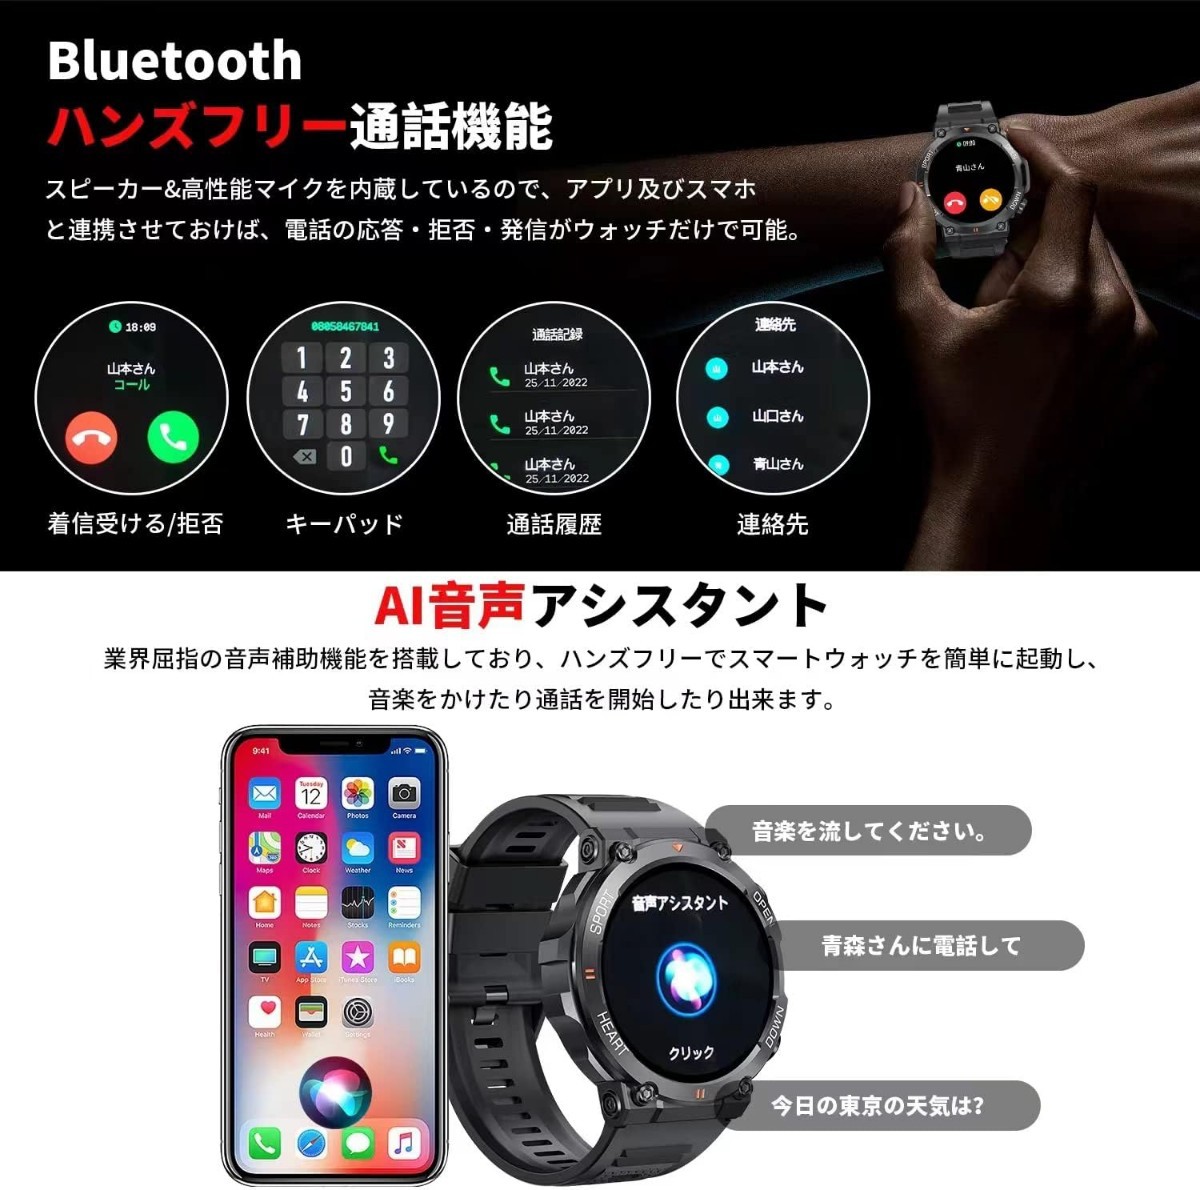  смарт-часы [2023 год кожа новый модель 1.39 дюймовый большой экран армия для стандарт Bluetooth телефонный разговор функция ] музыка воспроизведение спорт часы ударопрочный царапина предотвращение 